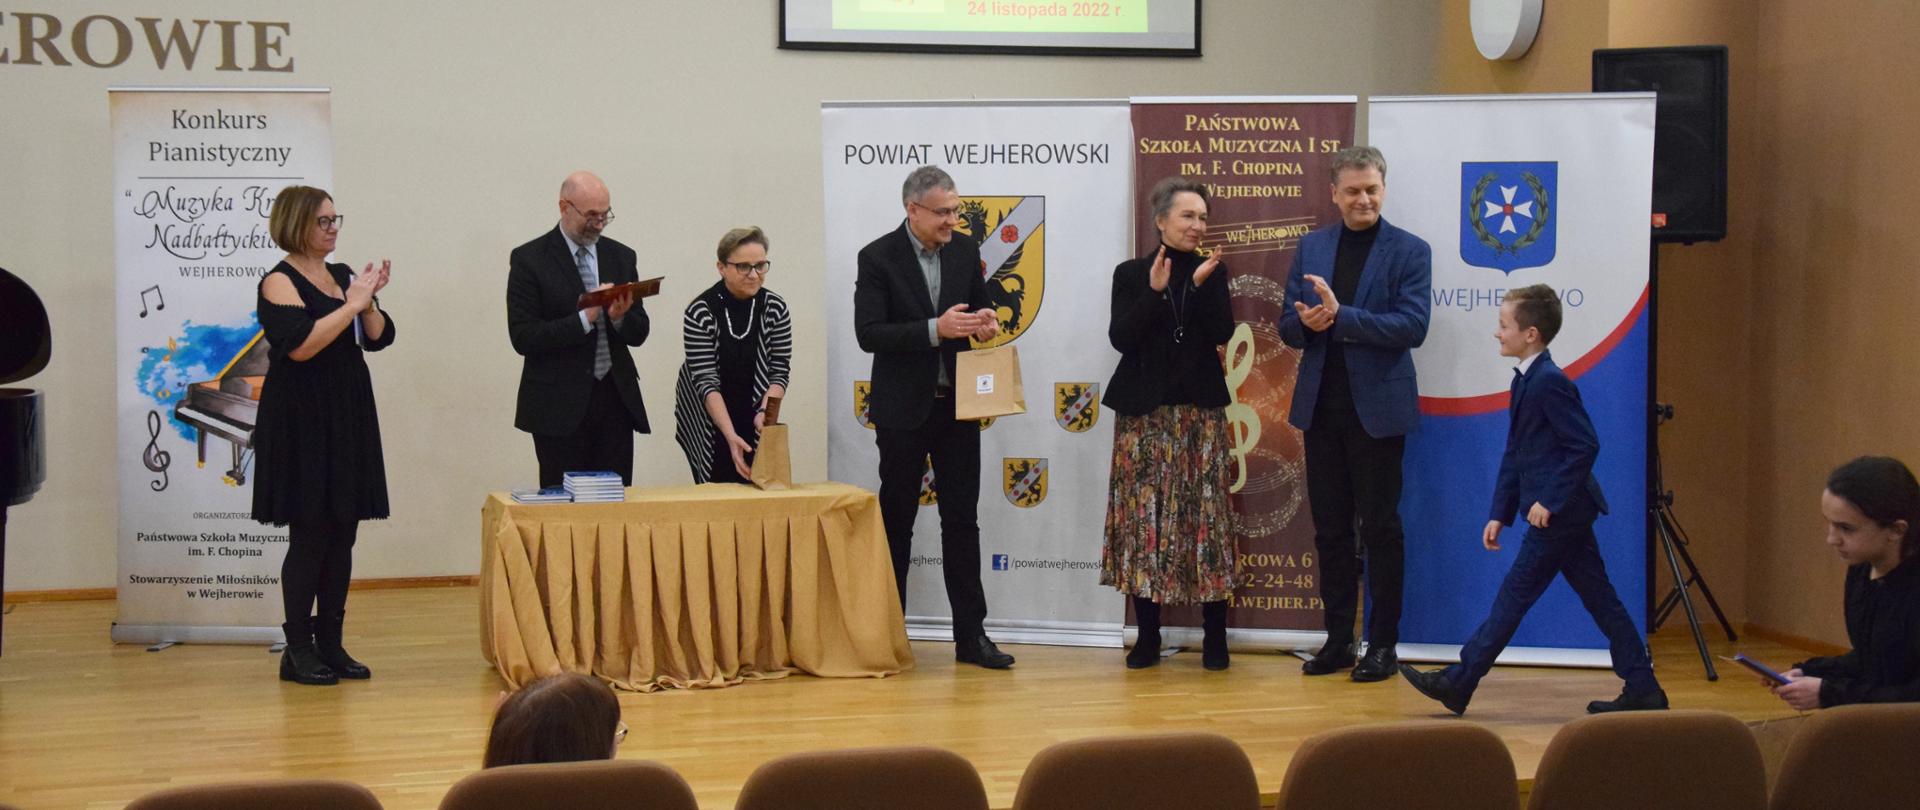 Na zdjęciu widoczna jest stojąca na scenie komisja konkursu pianistycznego oraz laureat Wyróżnienia w grupie II. W tle znajdują się banery konkursowe oraz logo Wejherowa i powiatu wejherowskiego.